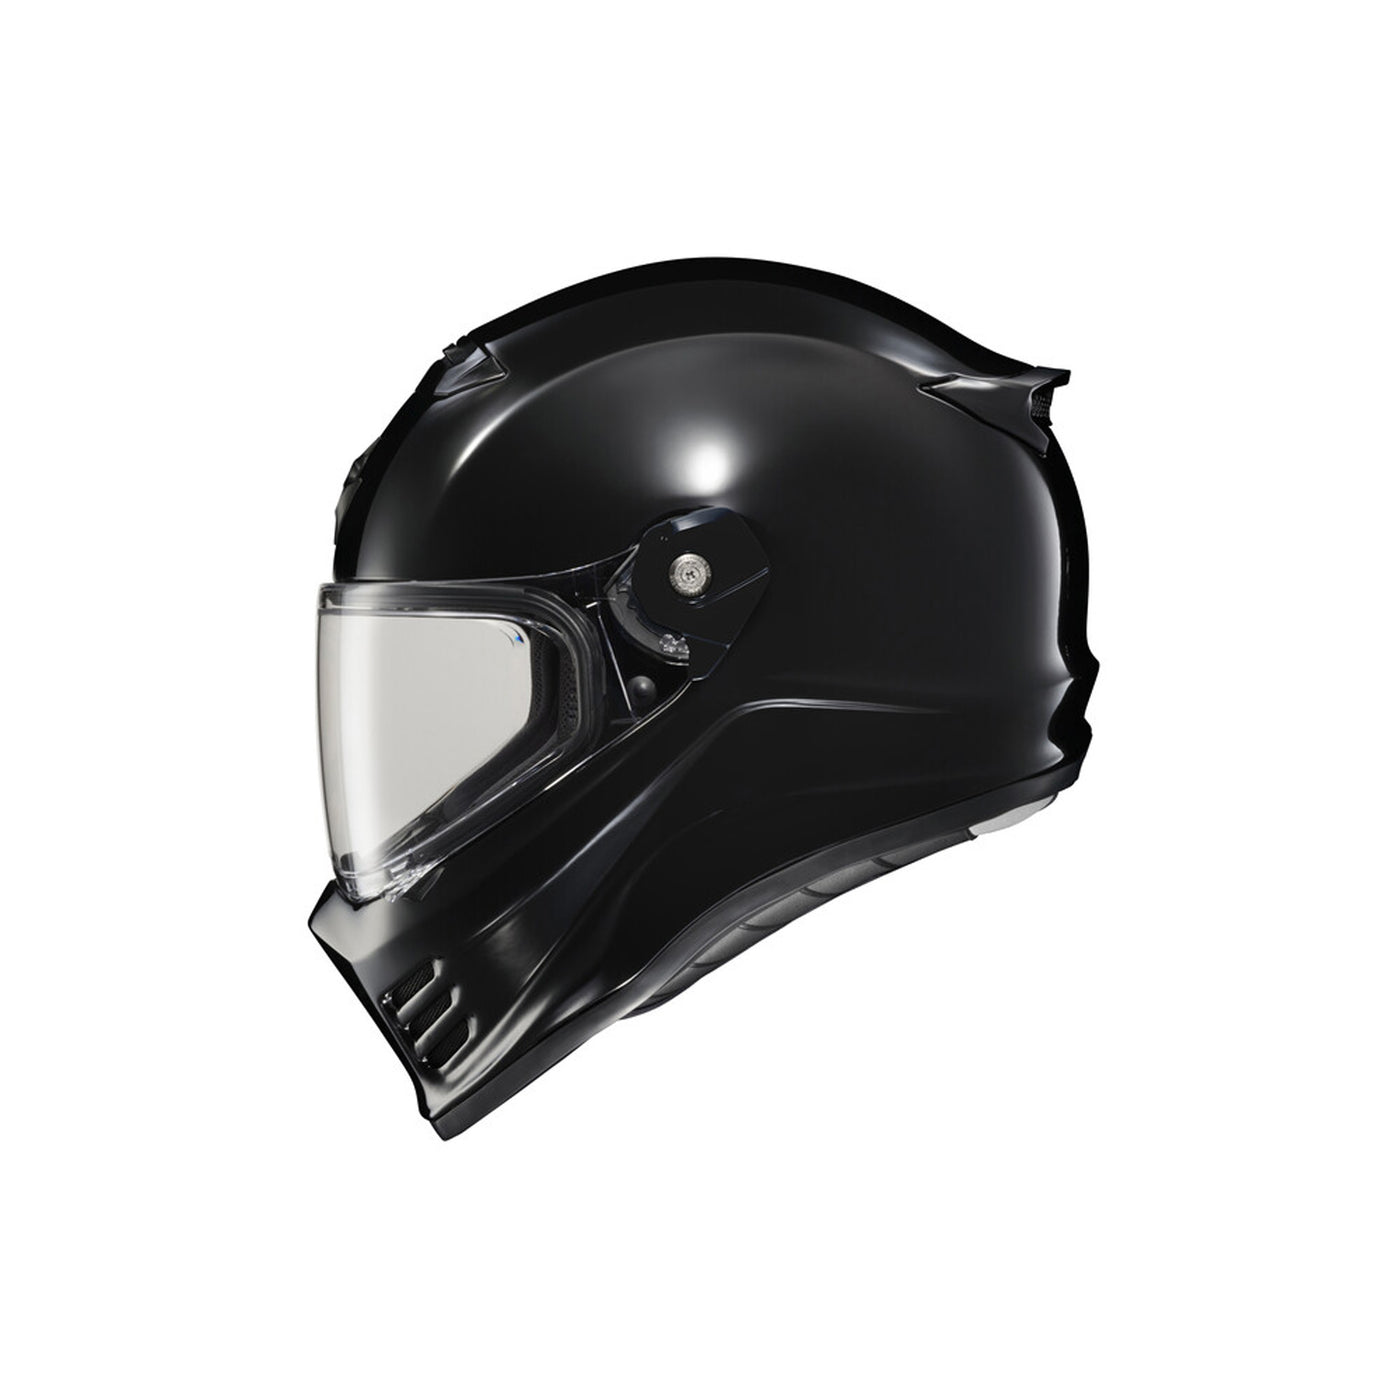 SCORPION EXO Covert FX Full Face Helmet